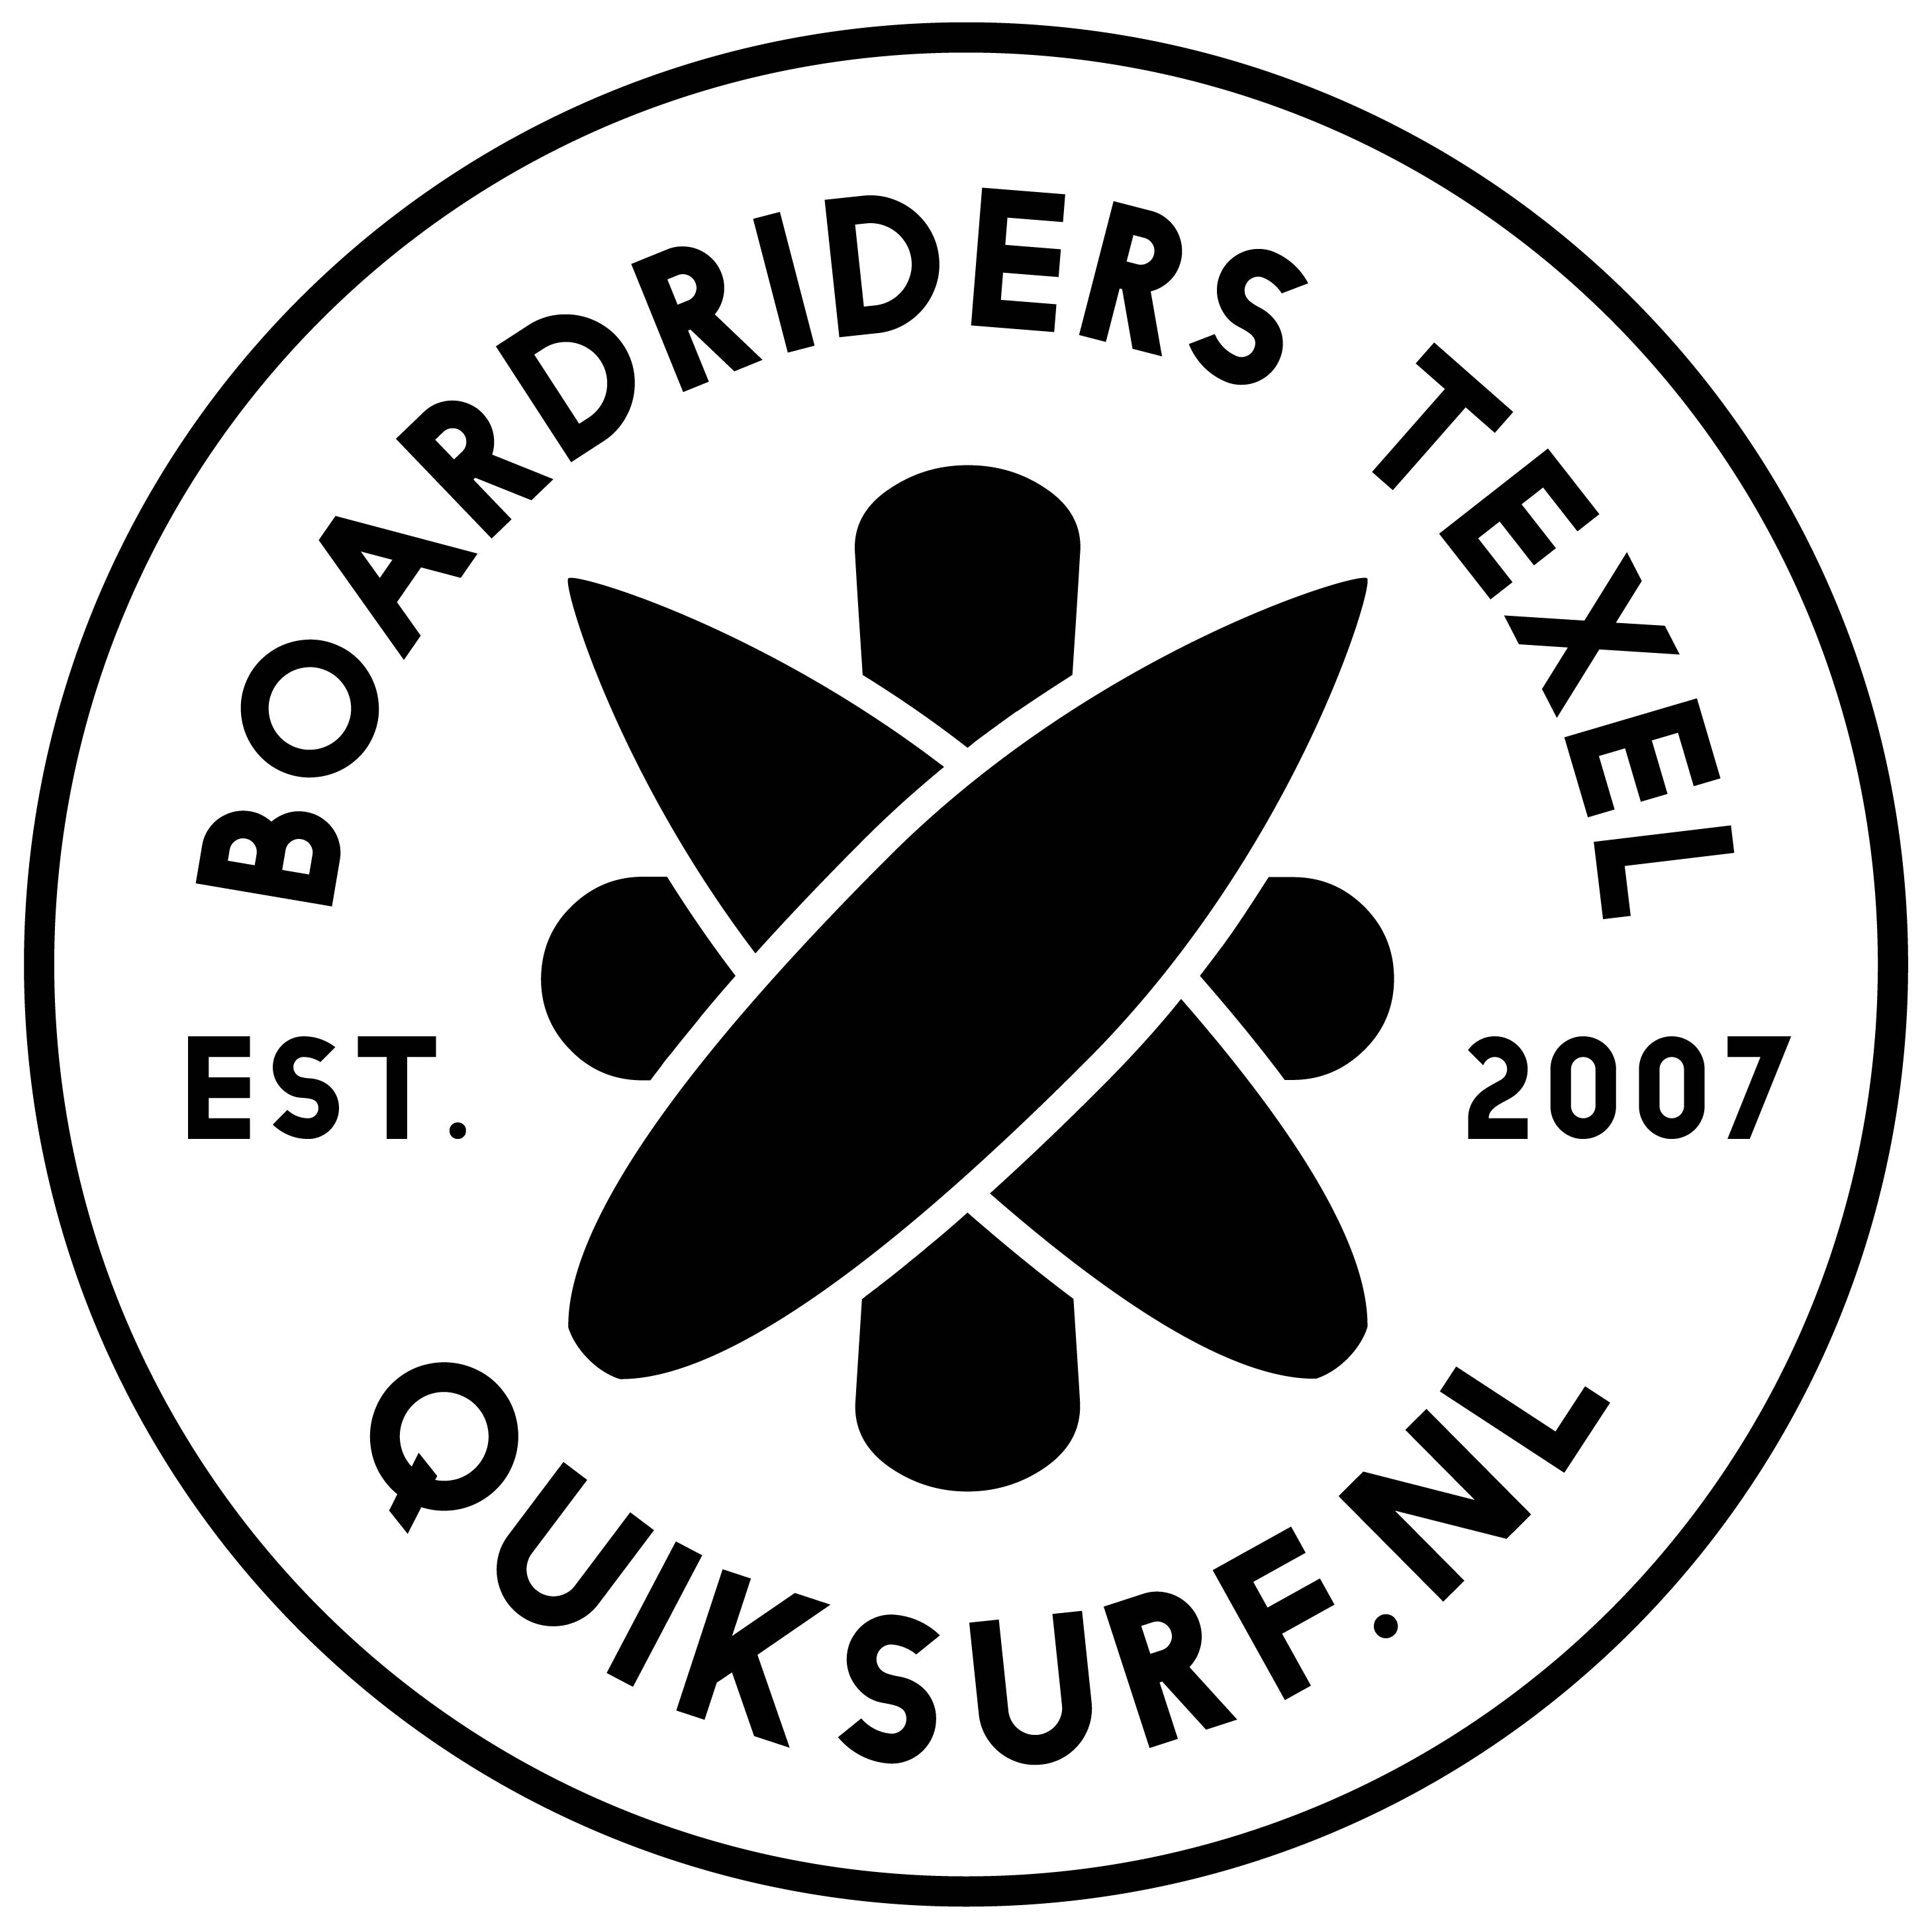 Logo del membro